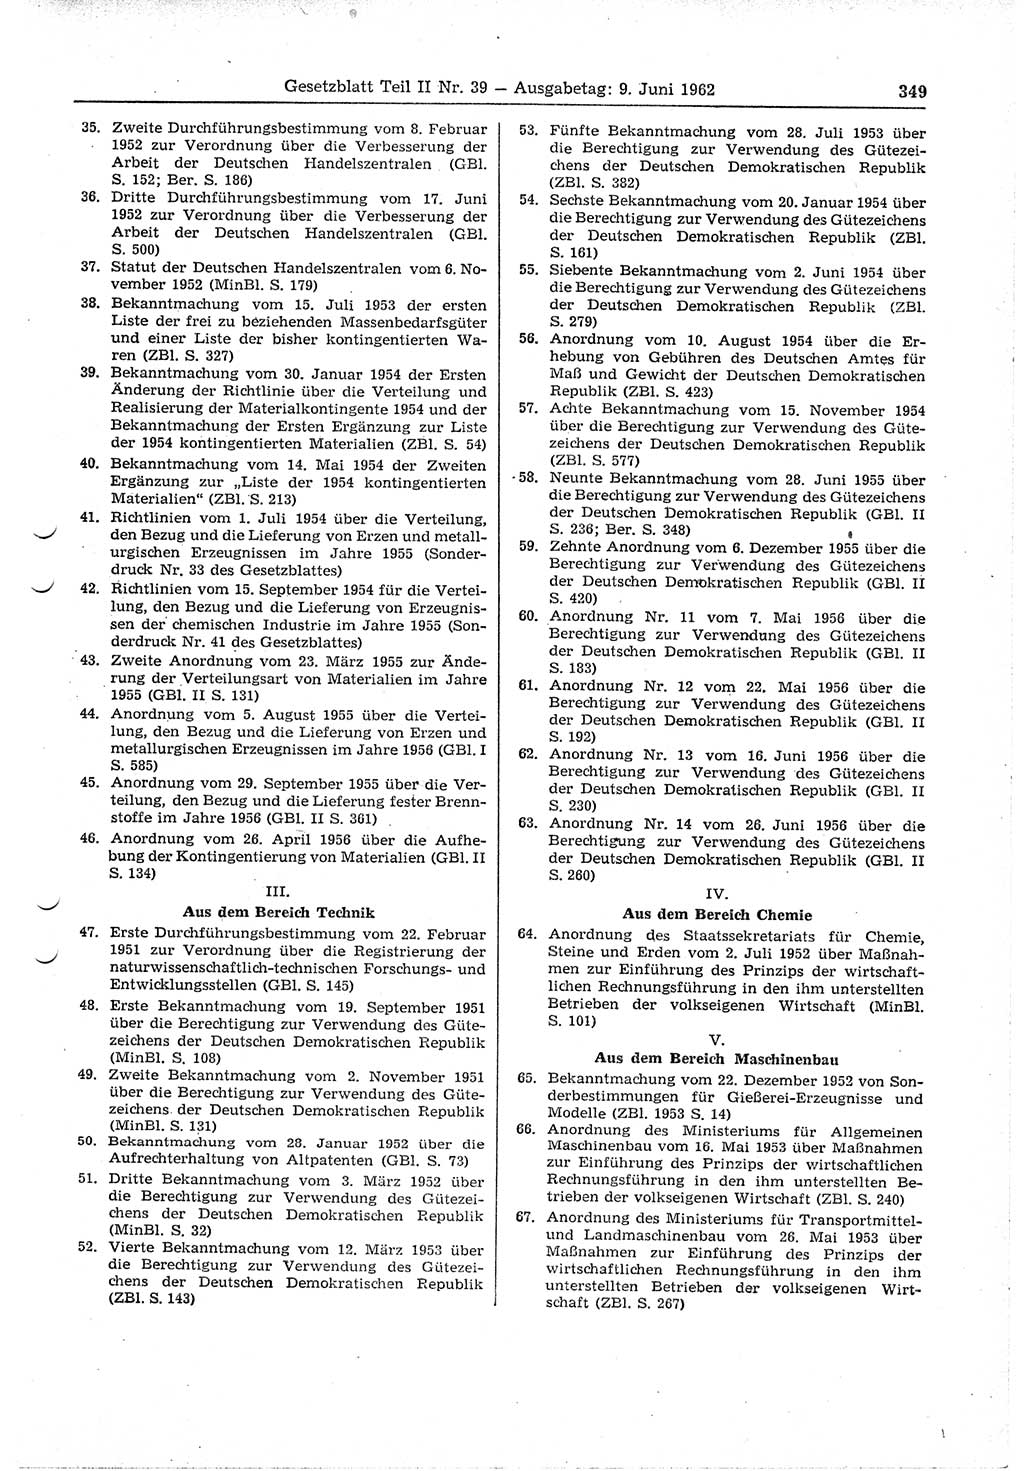 Gesetzblatt (GBl.) der Deutschen Demokratischen Republik (DDR) Teil ⅠⅠ 1962, Seite 349 (GBl. DDR ⅠⅠ 1962, S. 349)